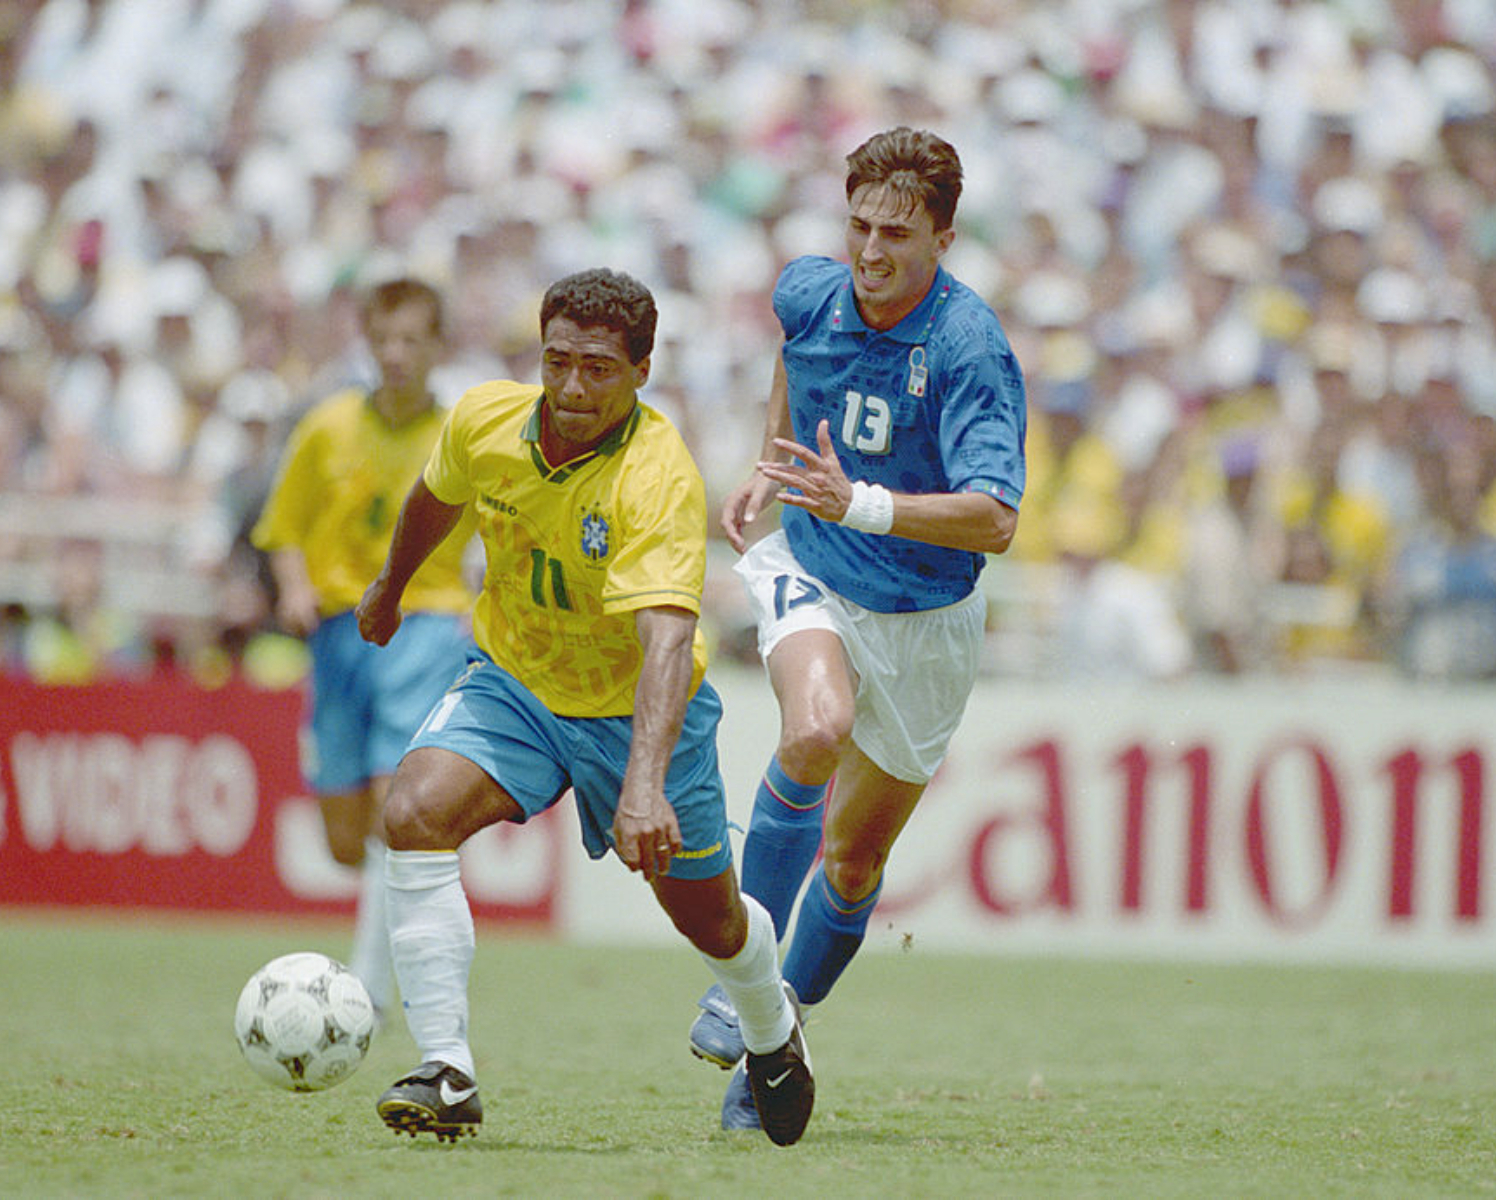 O artilheiro e os destaques da Copa de 1990, Itália - UOL Copa do Mundo